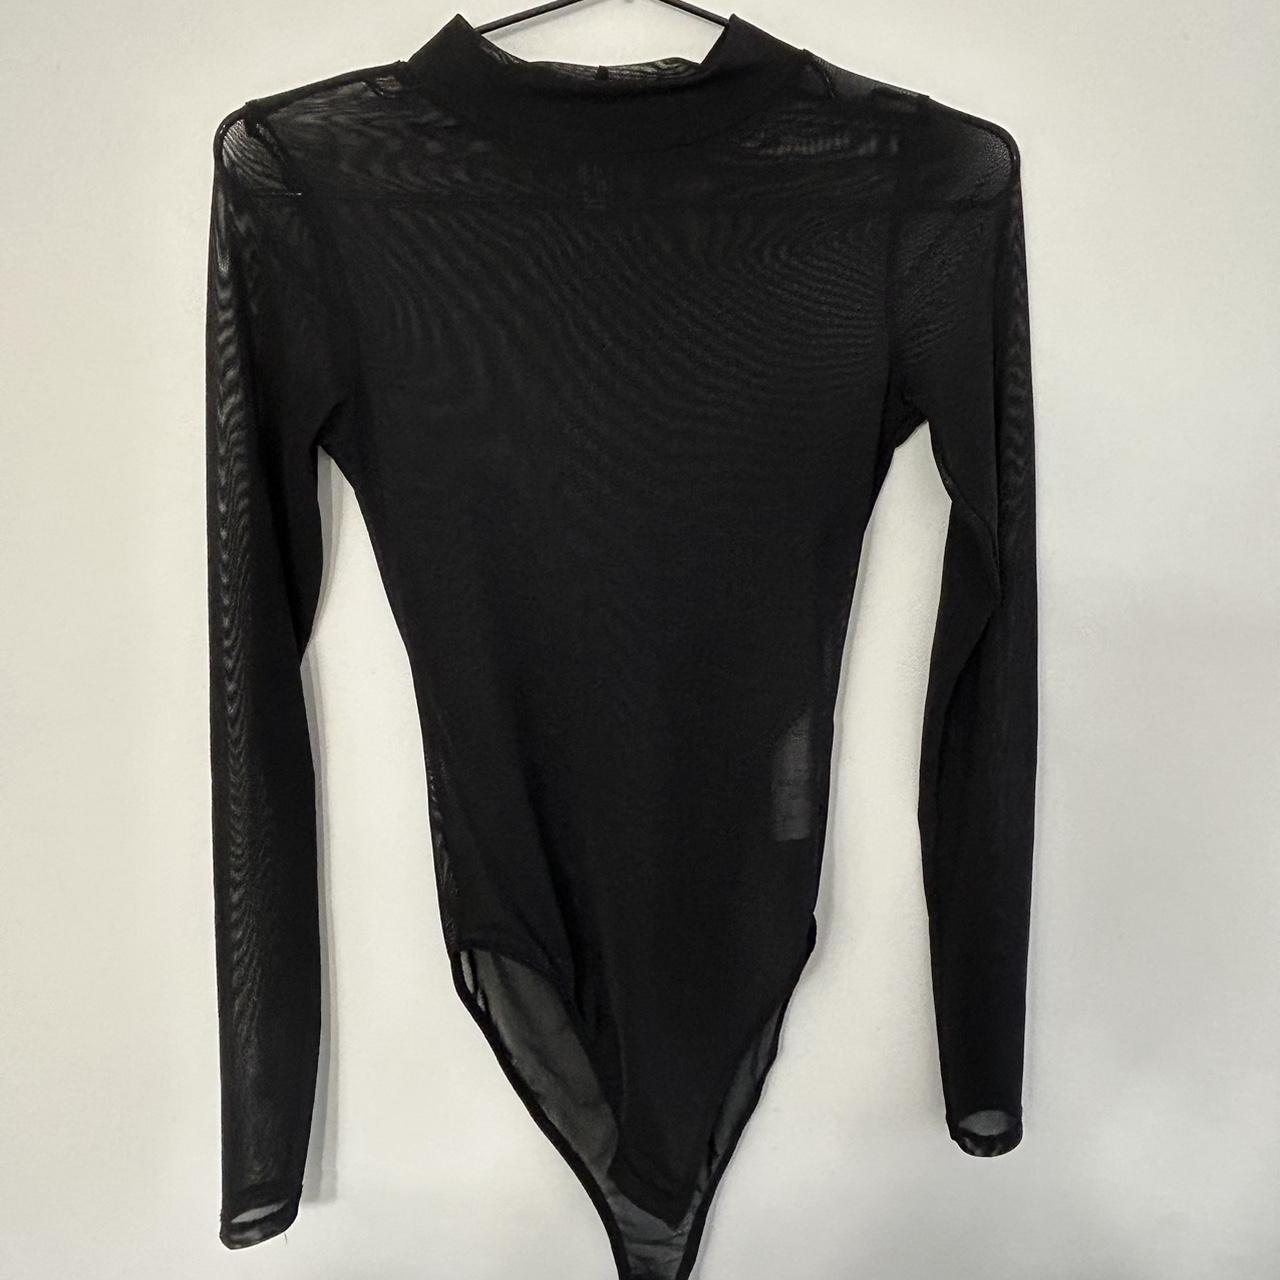 New Look long sleeved mesh body in black